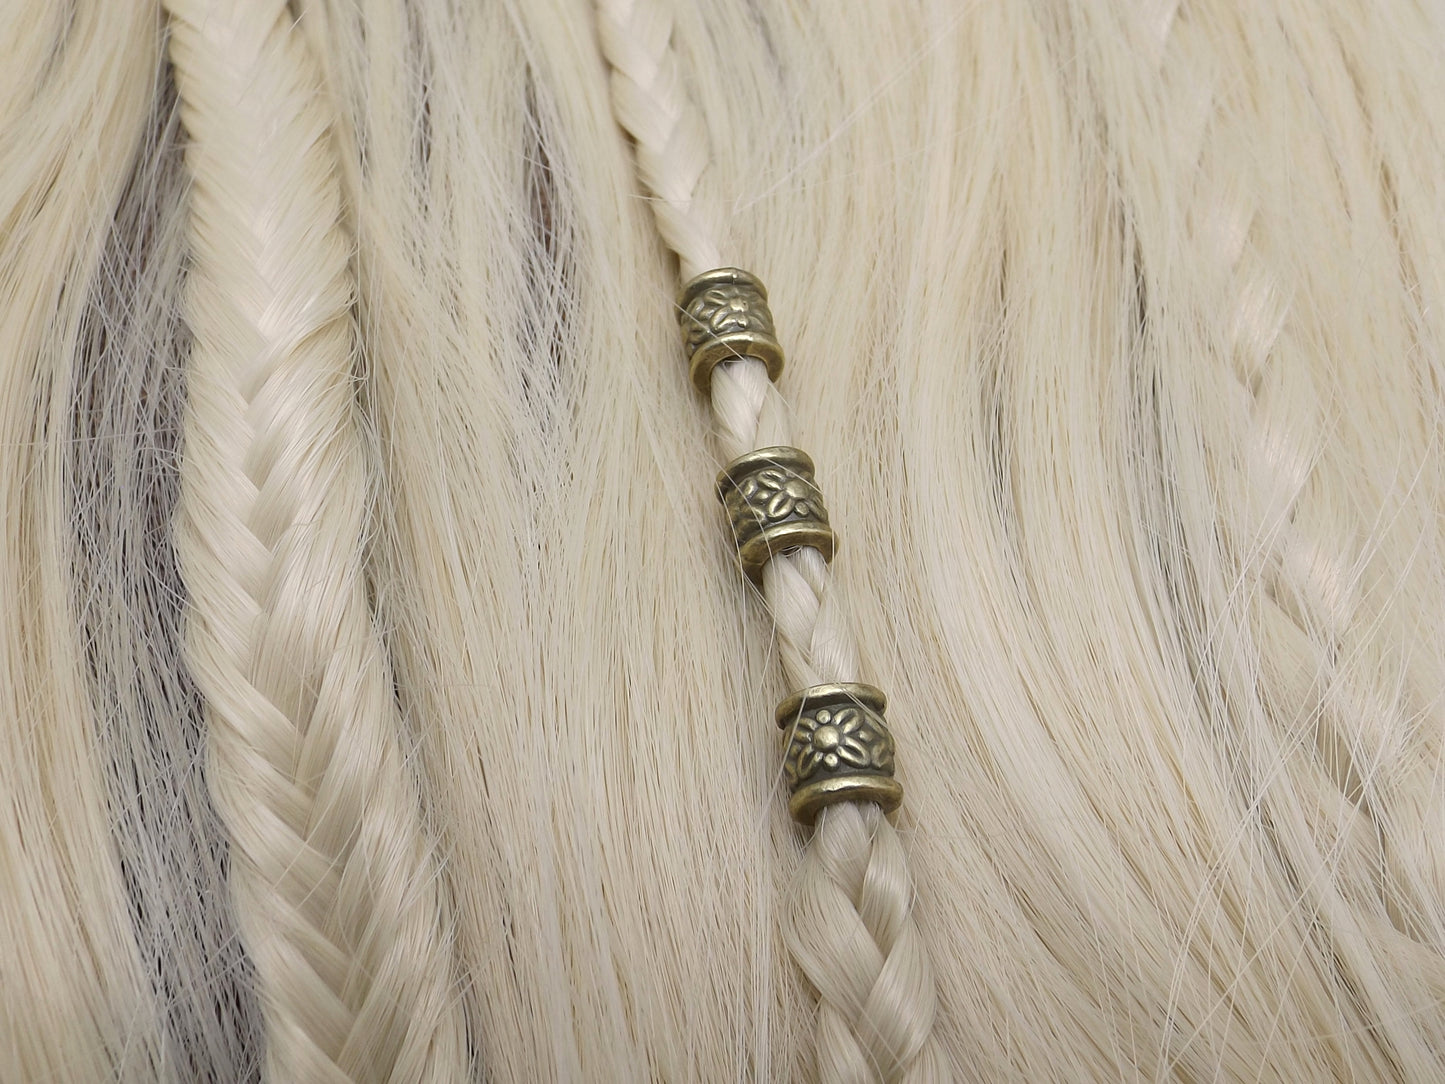 Lot de 3 perles viking à cheveux couleur bronze.